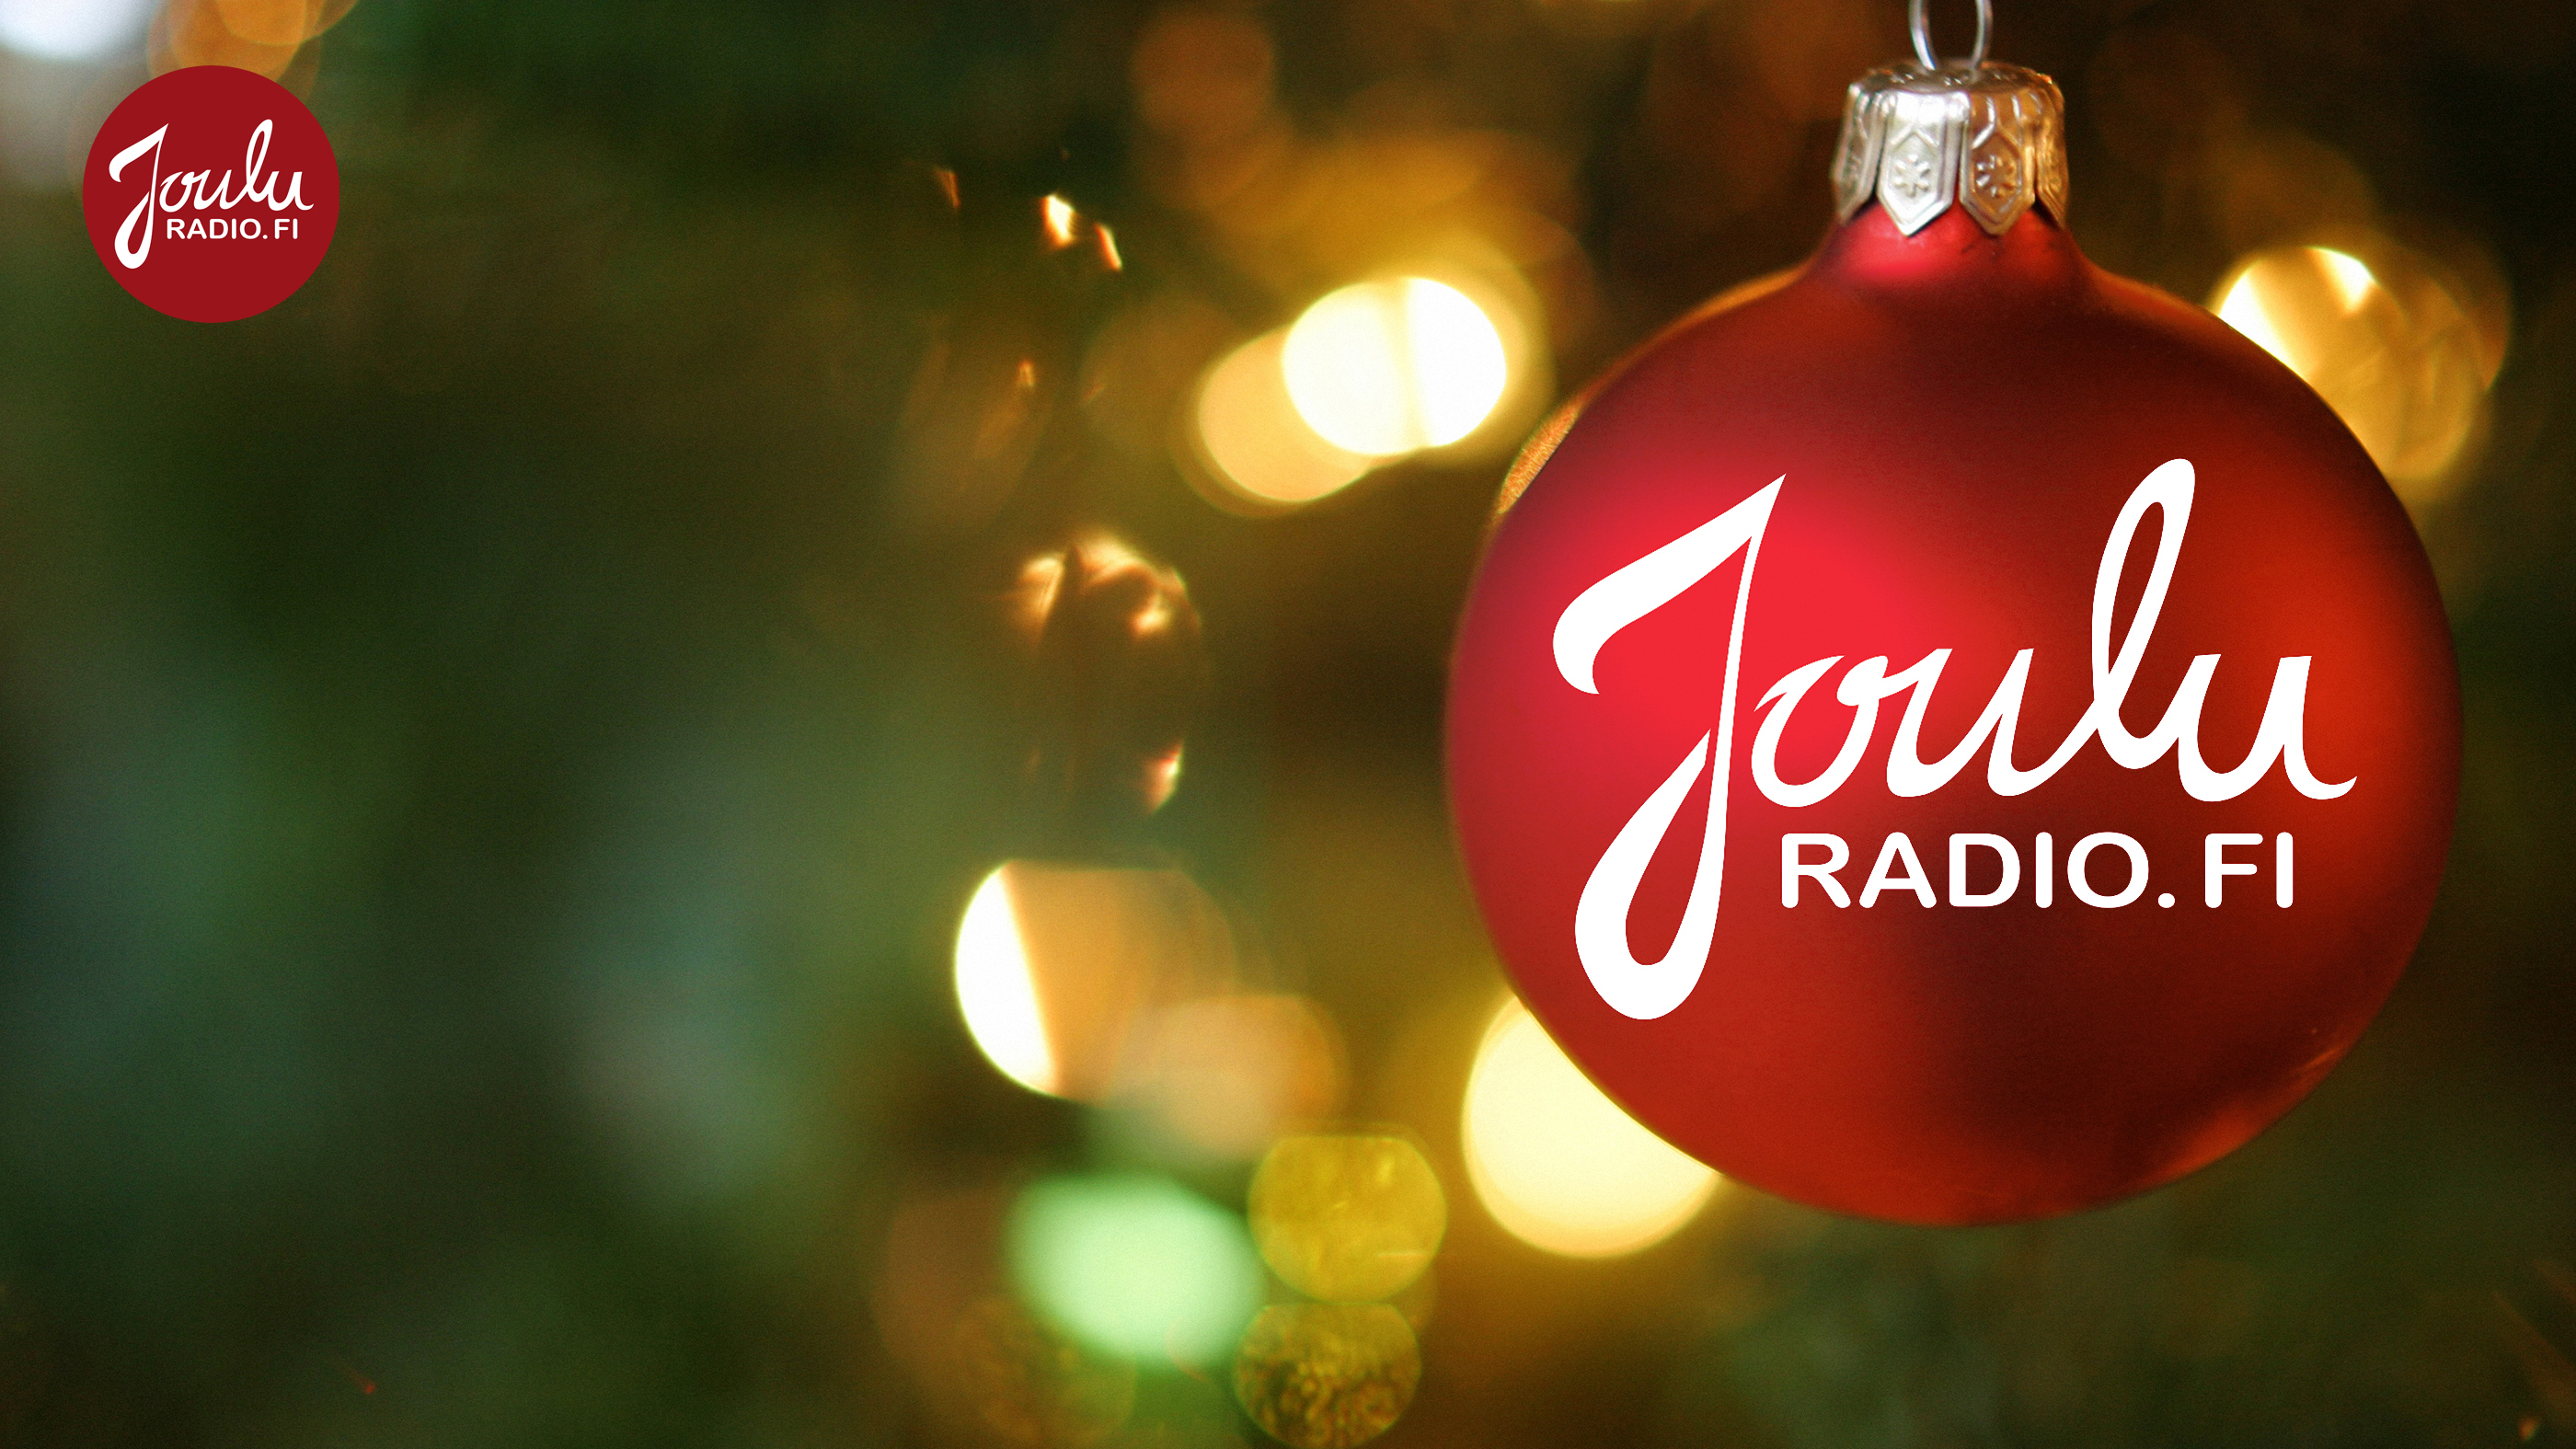 Punainen joulupallo riippuu kuusessa ja siinä lukee Jouluradio.fi